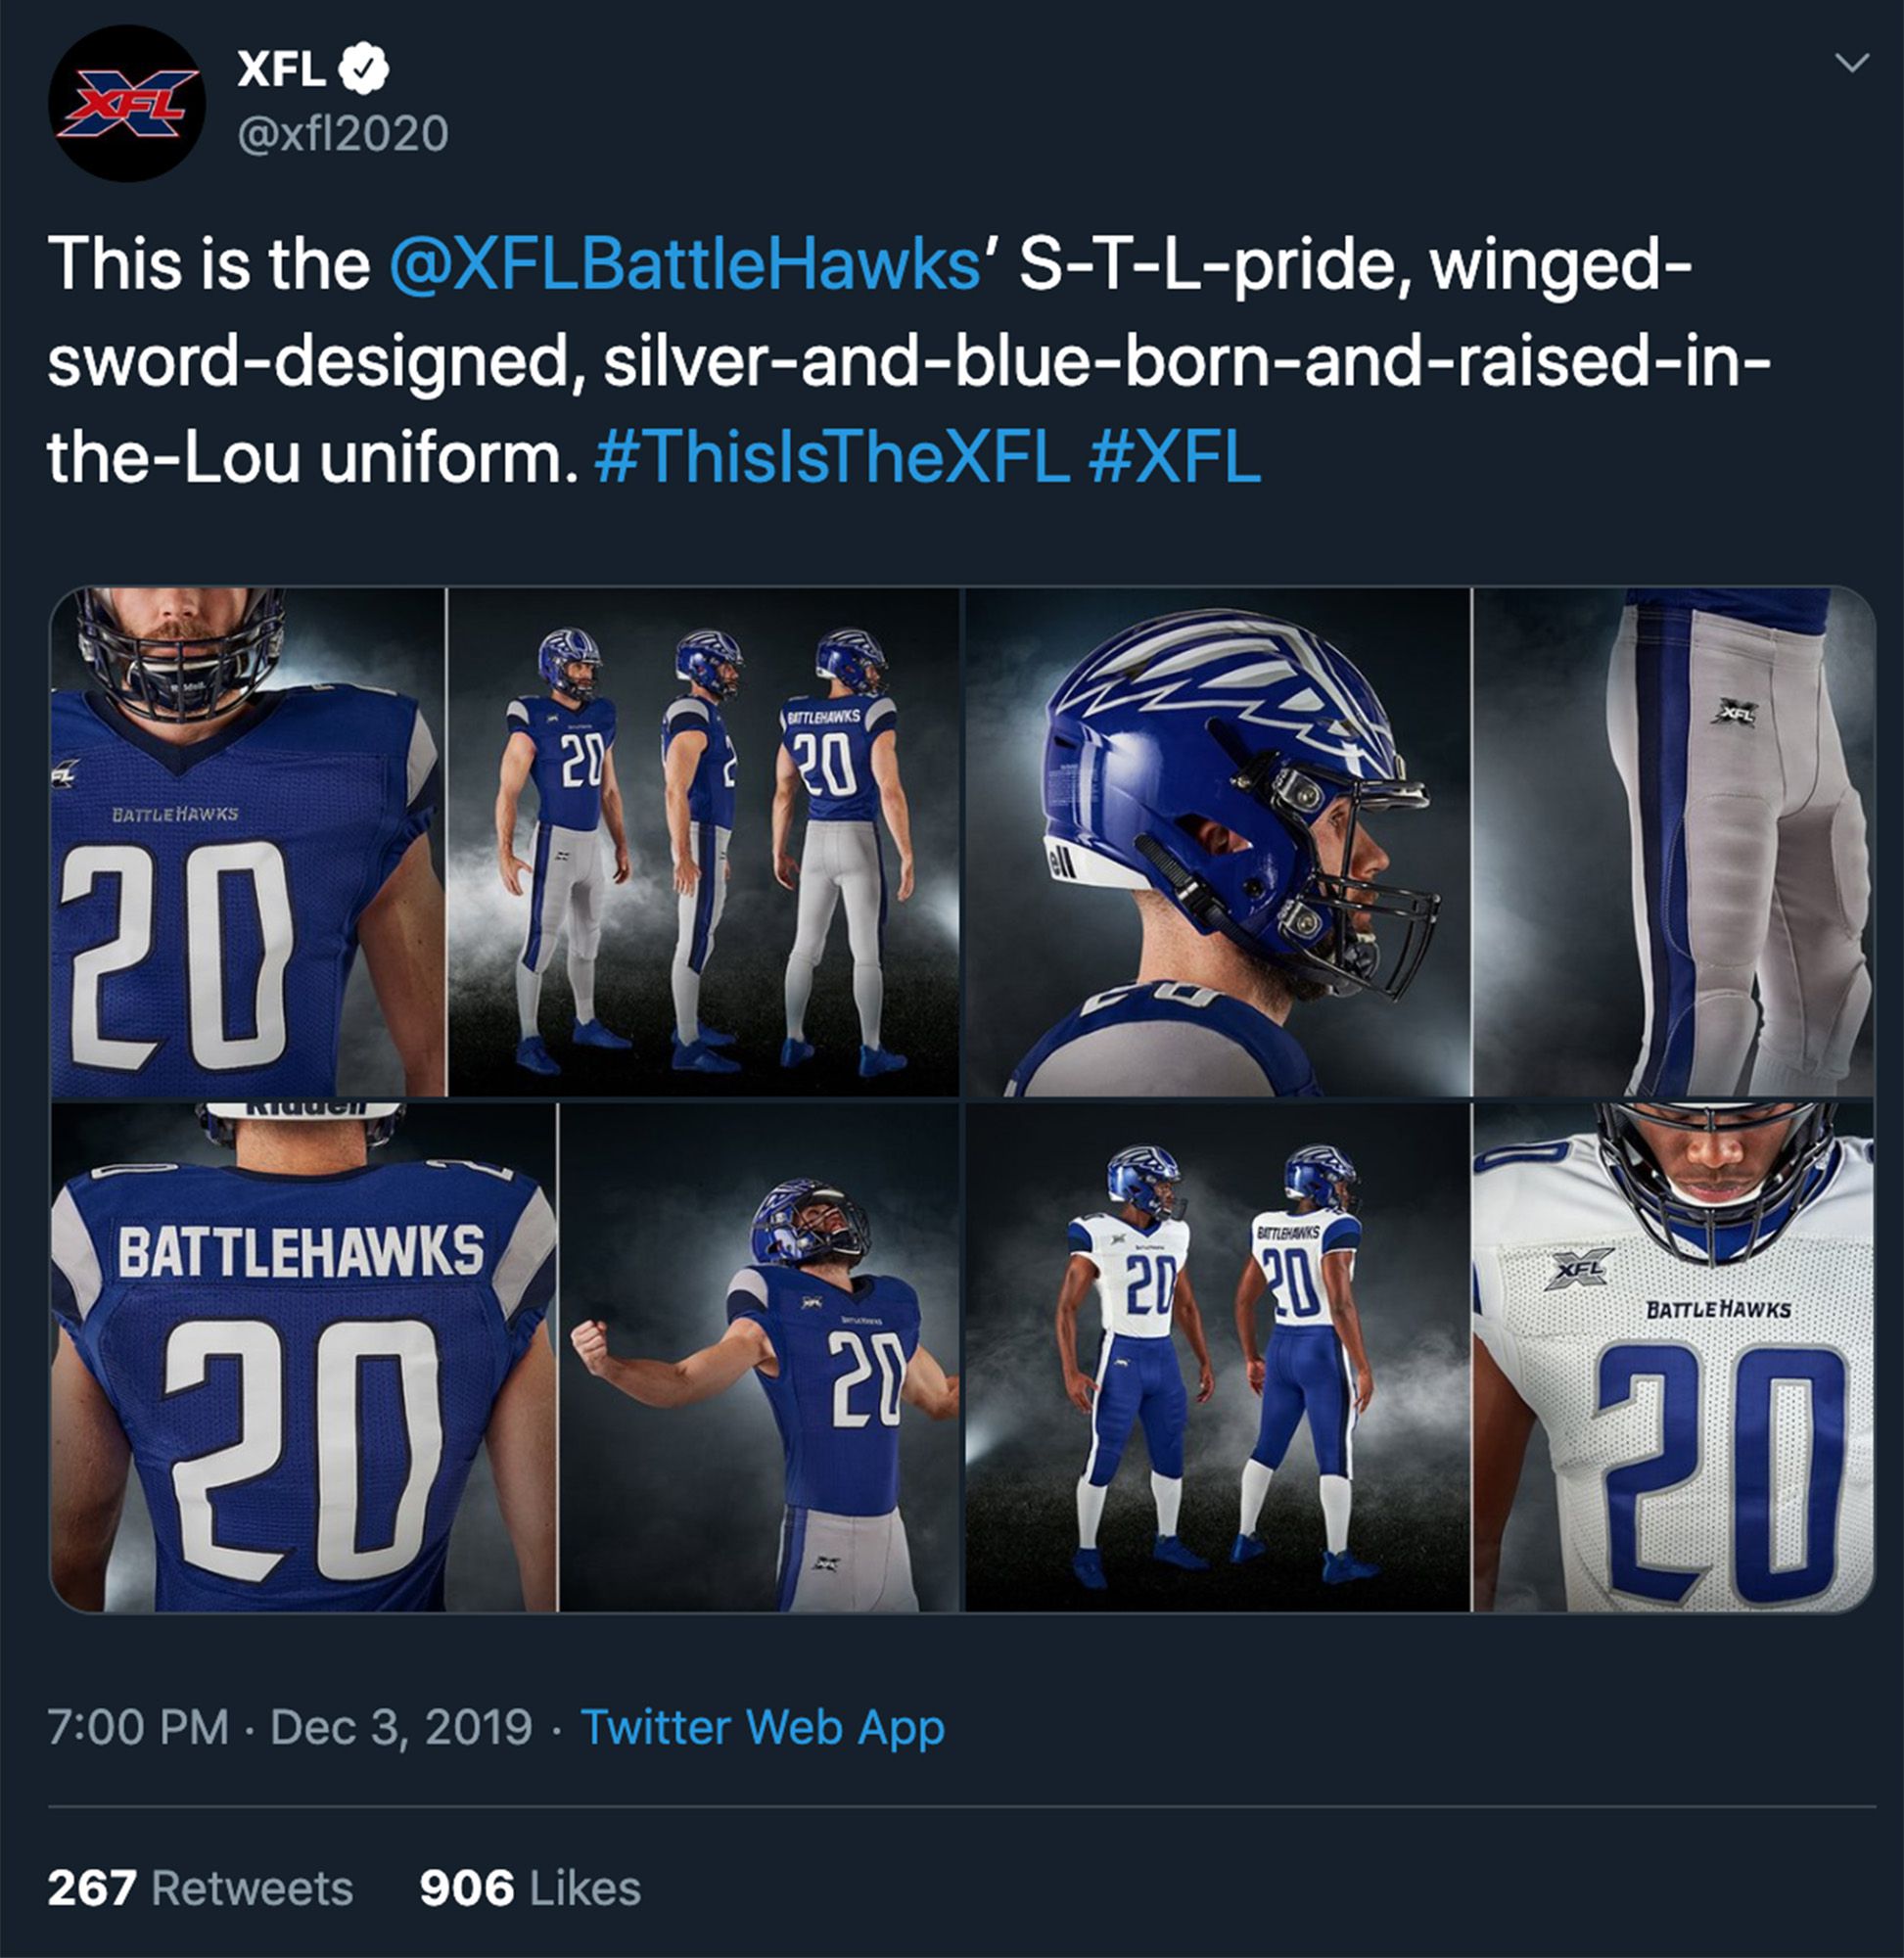 St. Louis Battlehawks uniform revealed